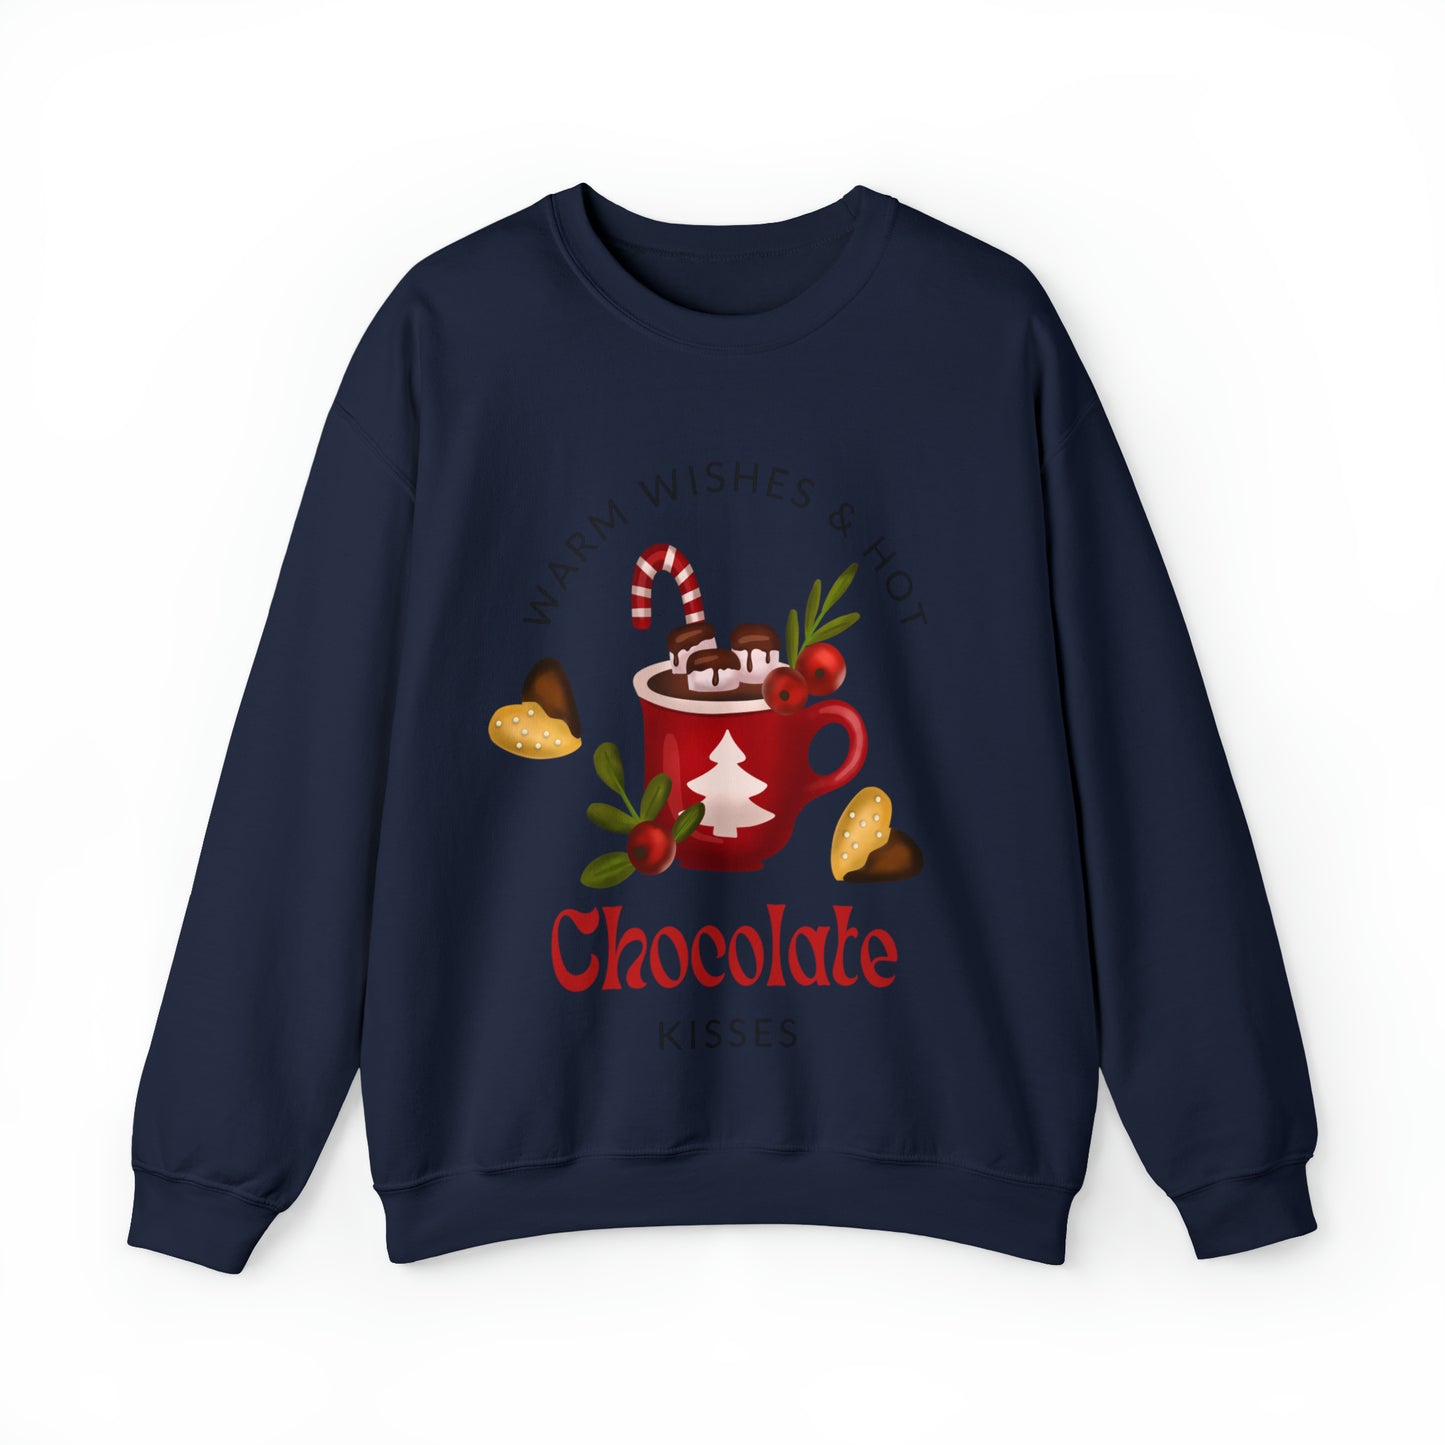 Warm Wishes Merry Christmas Crewneck Sweatshirt